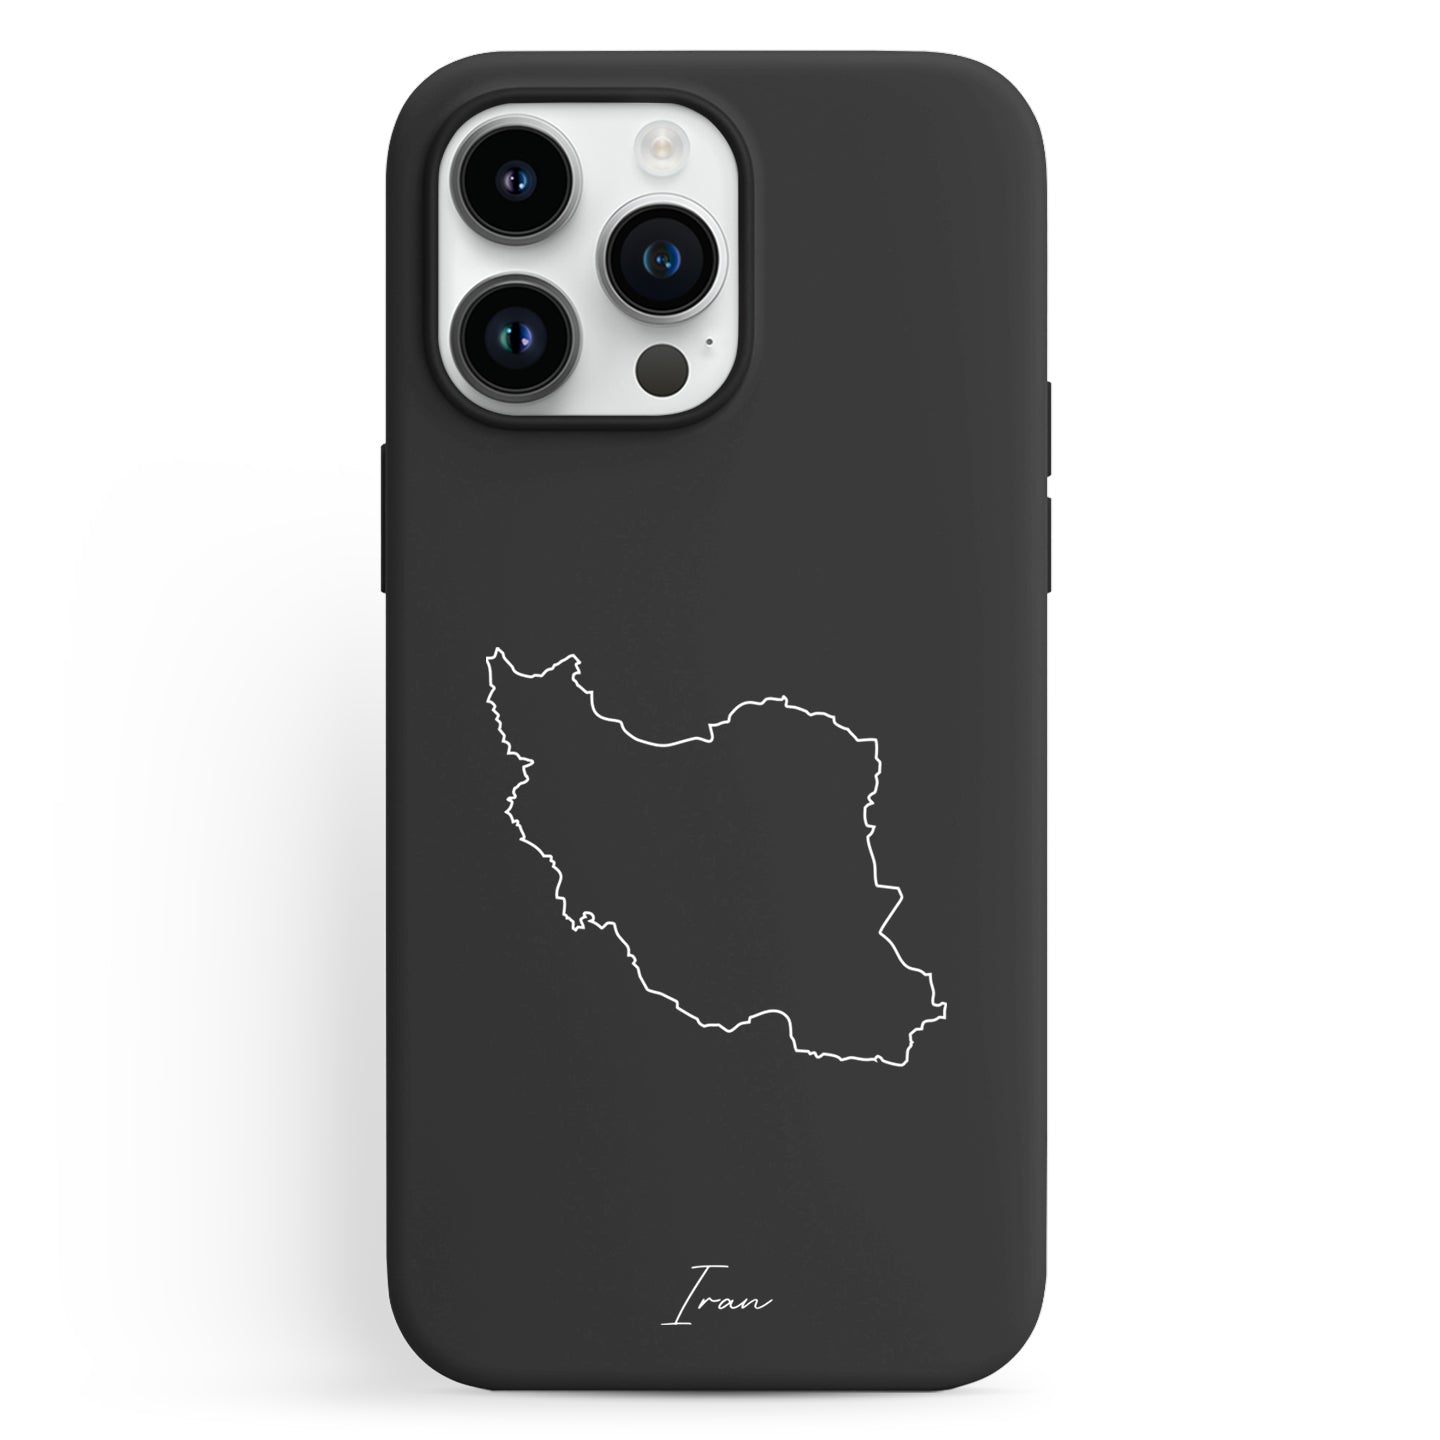 Handyhüllen mit Landkarte - Iran - 1instaphone